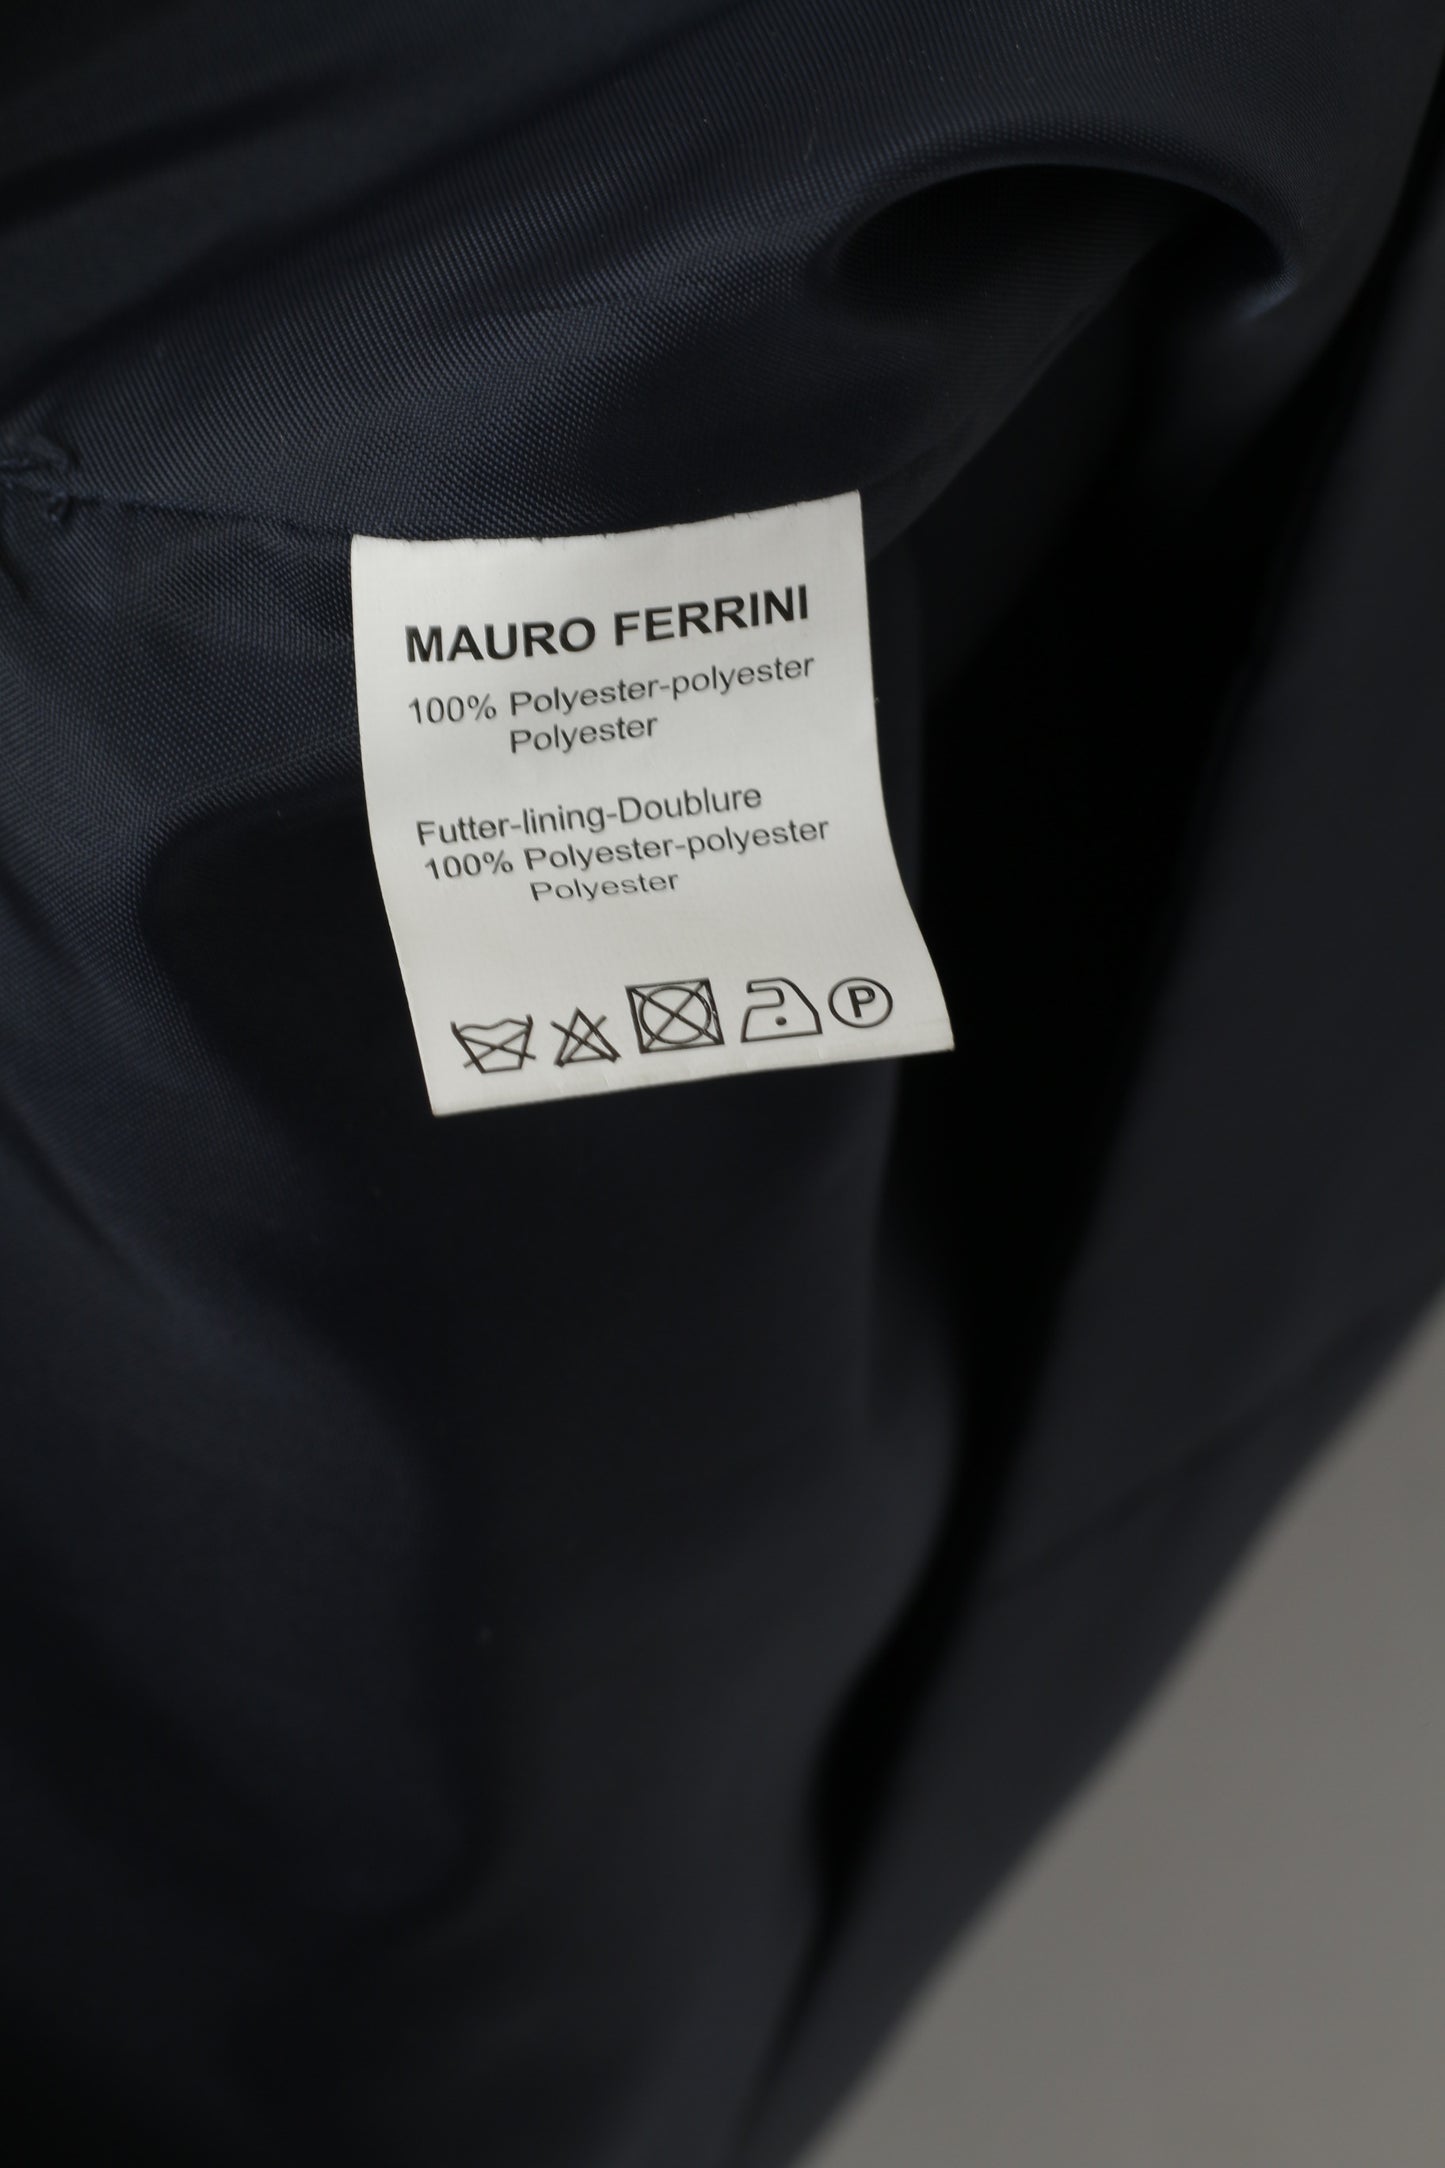 Mauro Ferrini Men 27 L Waistcoat Grey Navy Shiny Wedding Elegant Vest